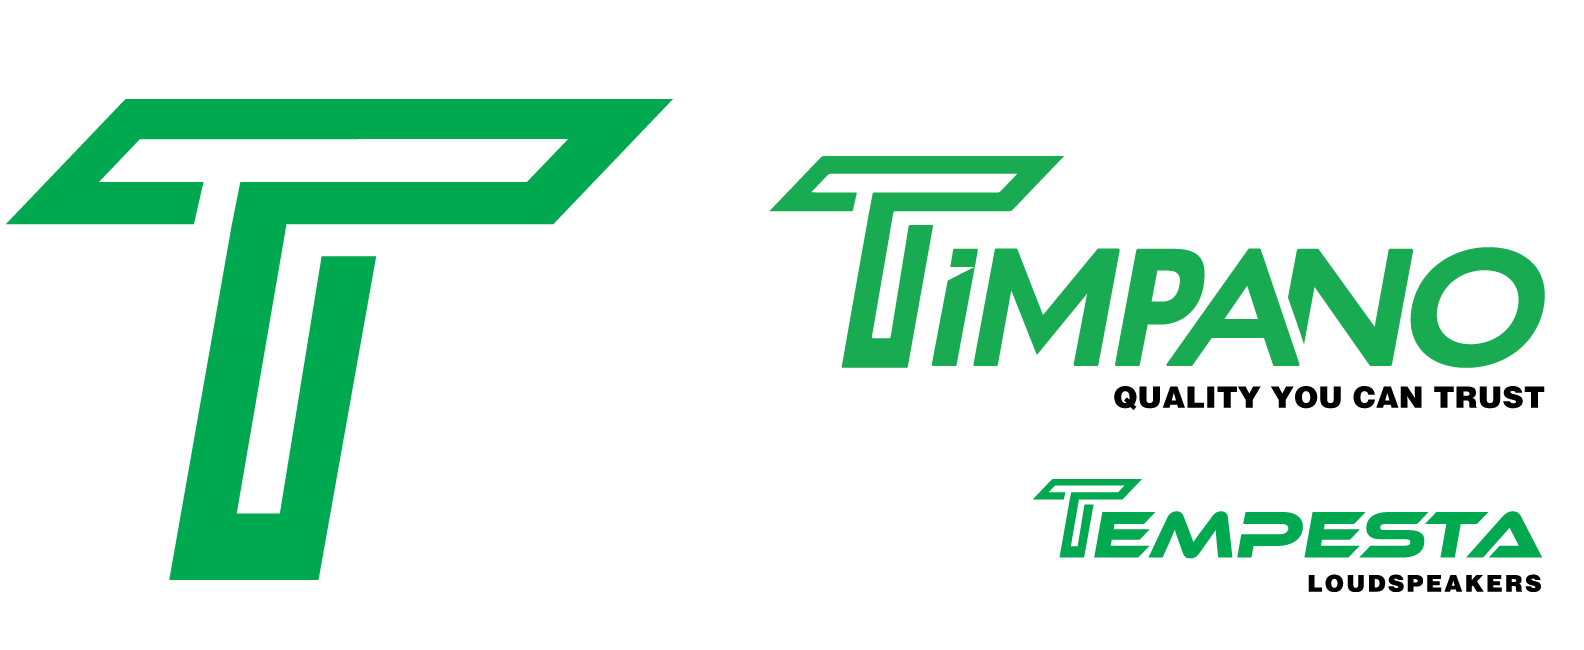 Timpano + Tempesta logos